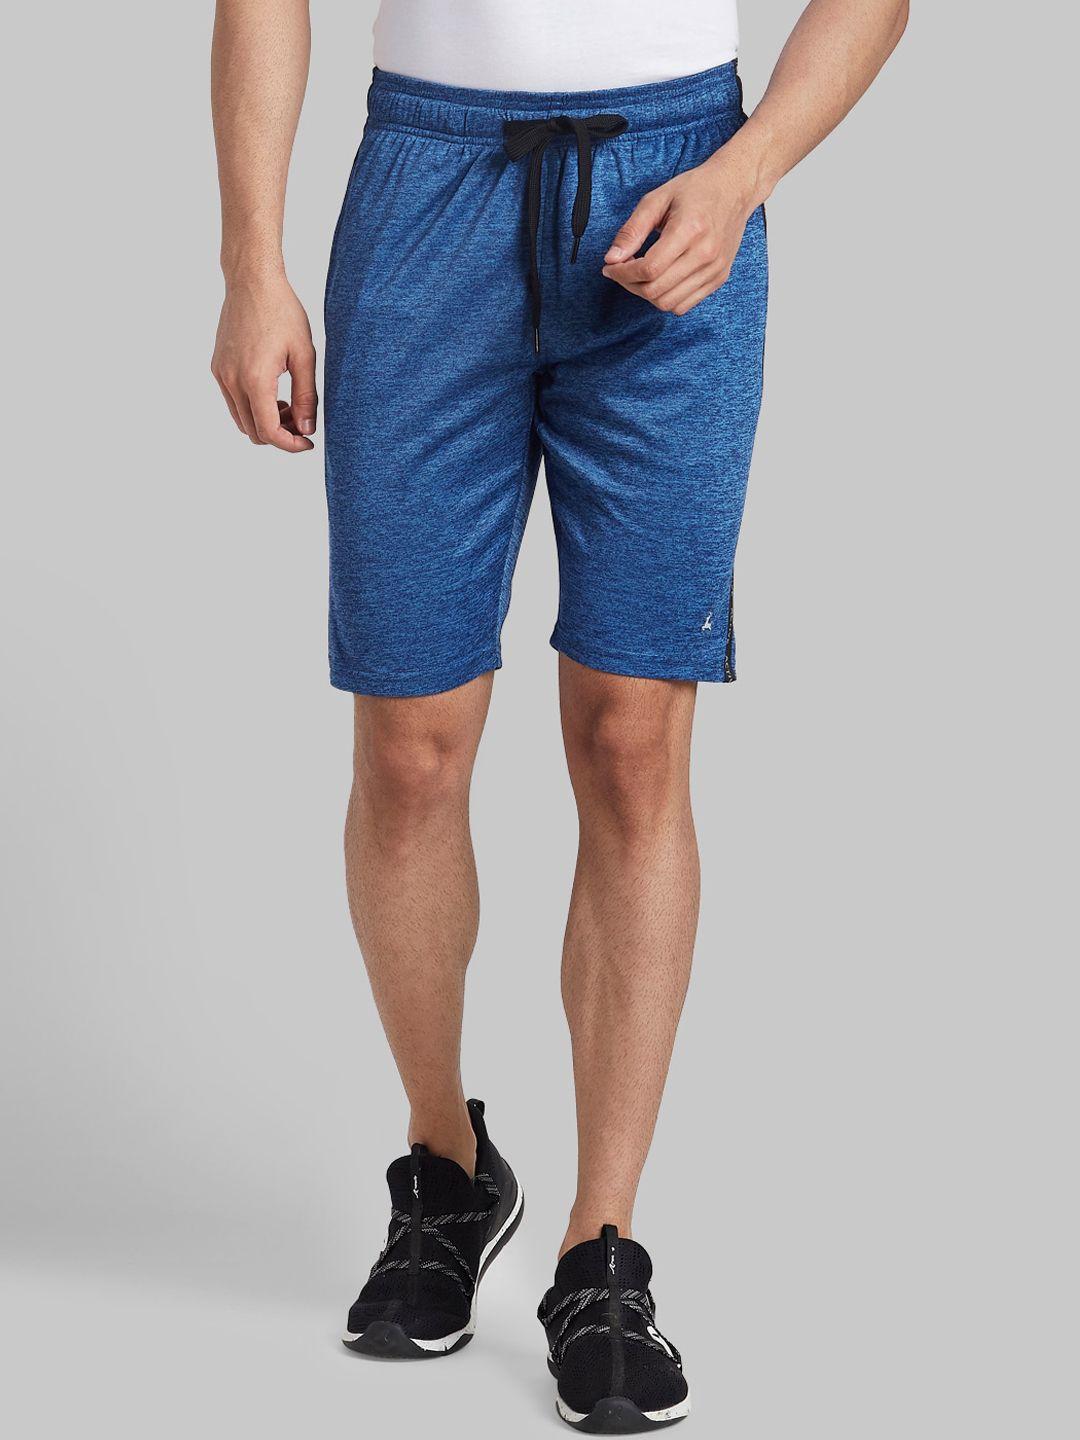 parx-men-blue-solid-shorts